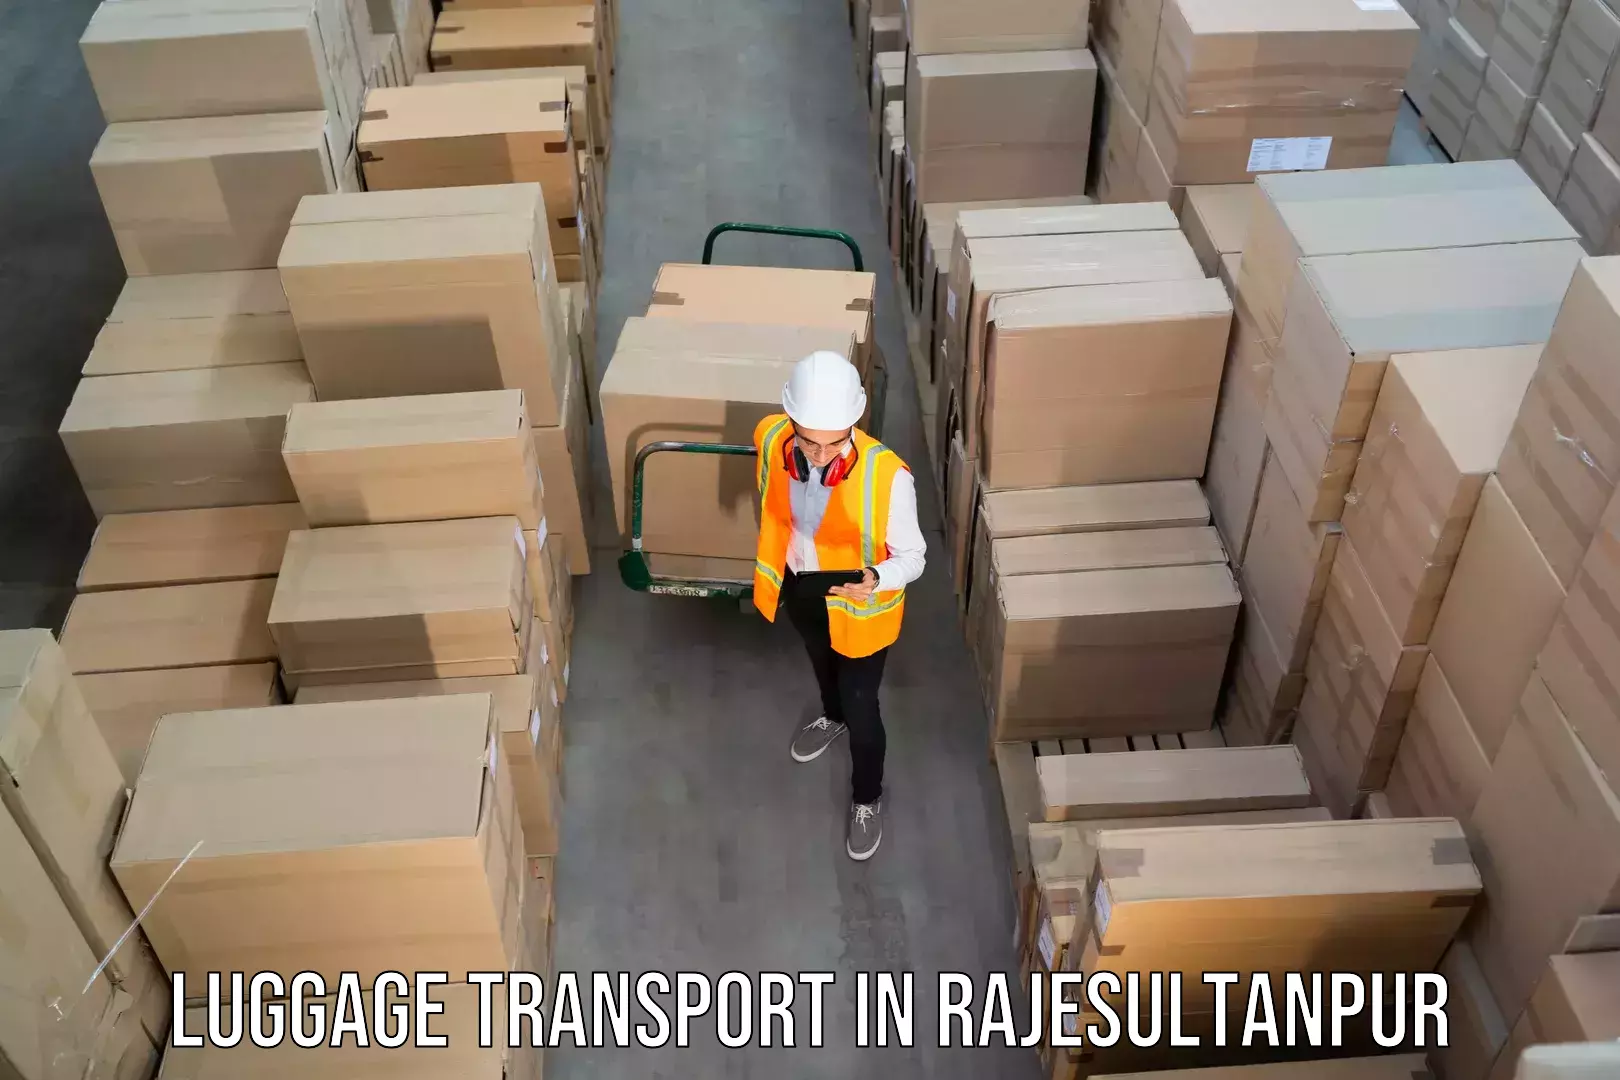 Digital baggage courier in Rajesultanpur